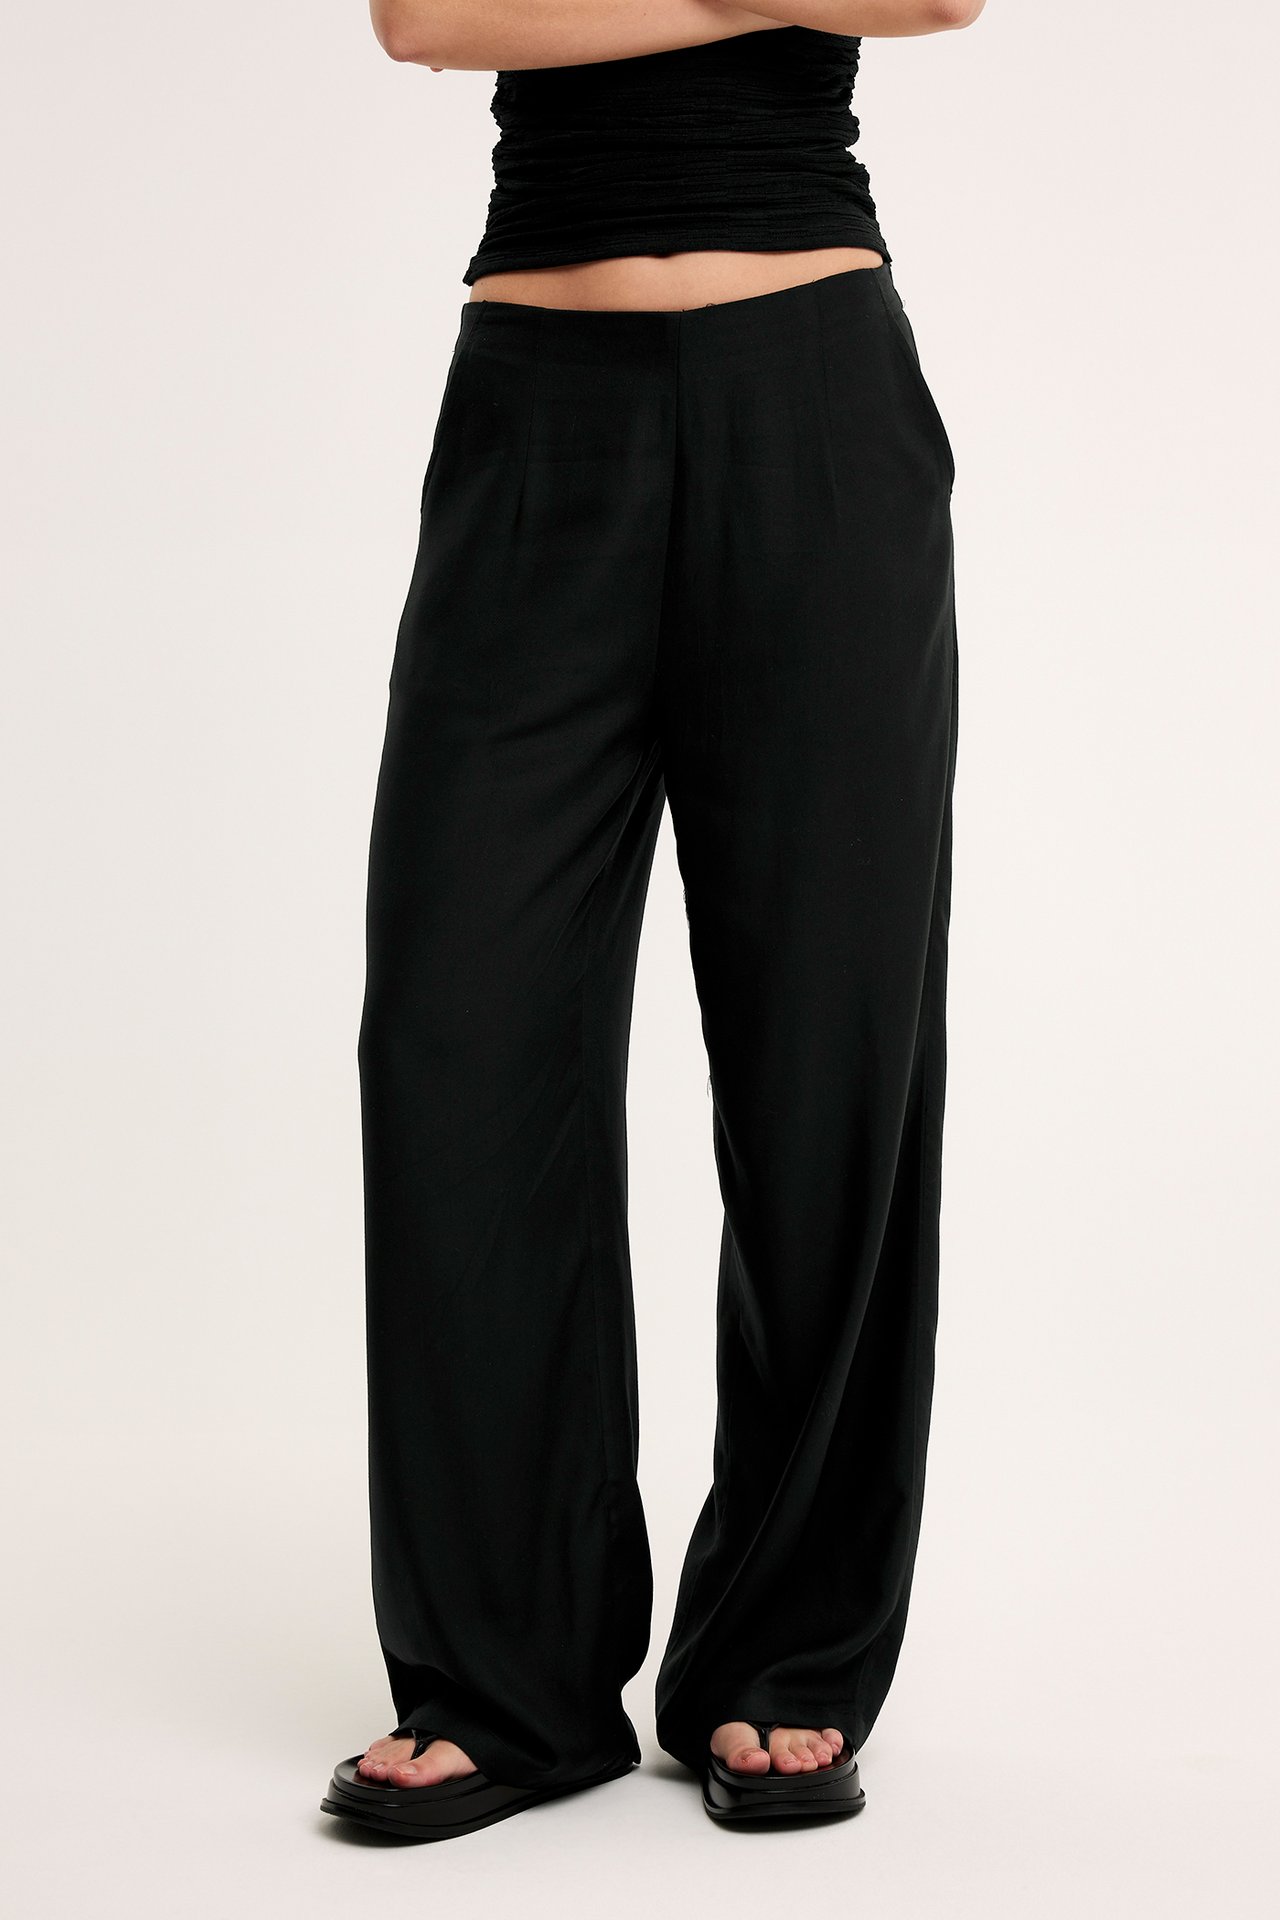 Szerokie spodnie - Czarne - 174cm / Storlek: S - 2